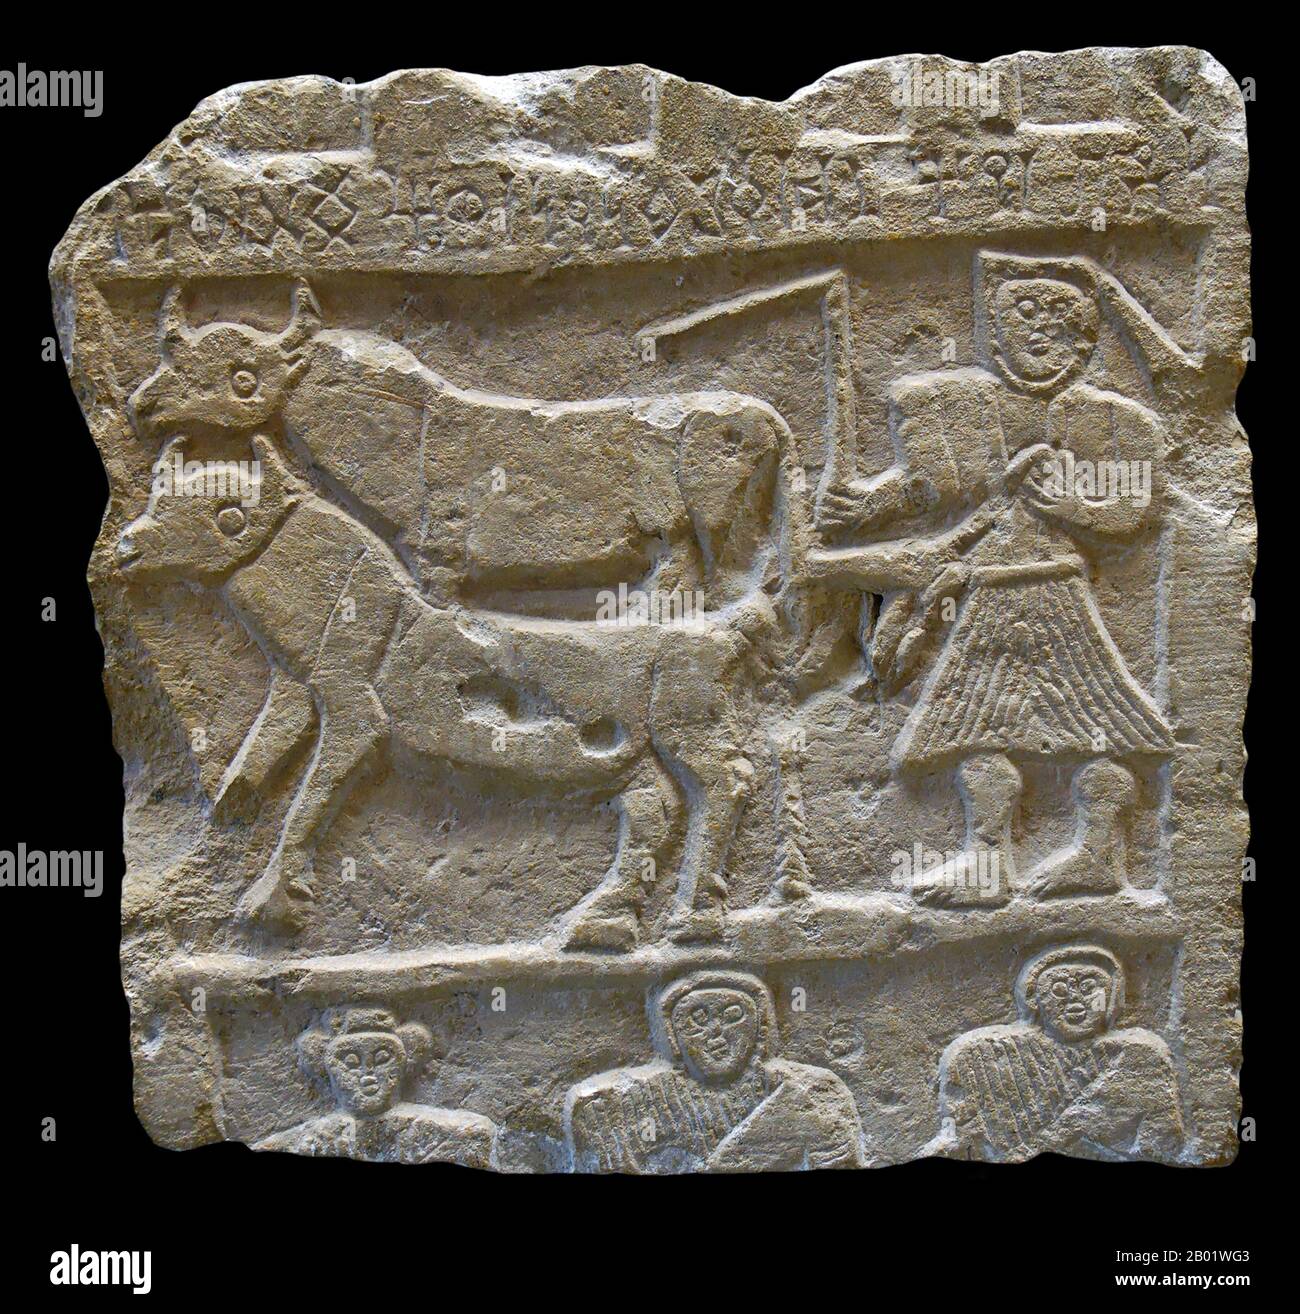 Jemen: Eine Grabstele mit einem Pflugmann über drei Büsten, Sabäer, Kalkstein, 1.-3. Jahrhundert n. Chr. Inschrift in sabäischer Sprache: Stele von Yahmad, Shufnîqên, Hassat und Khallî. Das alte Sabäische Königreich erlangte im frühen 1. Jahrtausend v. Chr. die Macht. Im 1. Jahrhundert v. Chr. wurde es von den Himyariten erobert, aber nach dem Zerfall des ersten Himyaritenreiches der Könige von Saba und Dhu-Raydan erschien im frühen 2. Jahrhundert das Reich der Mittelsabäer wieder. Schließlich wurde es Ende des 3. Jahrhunderts von den Himyariten erobert. Seine Hauptstadt war Ma'rib. Stockfoto